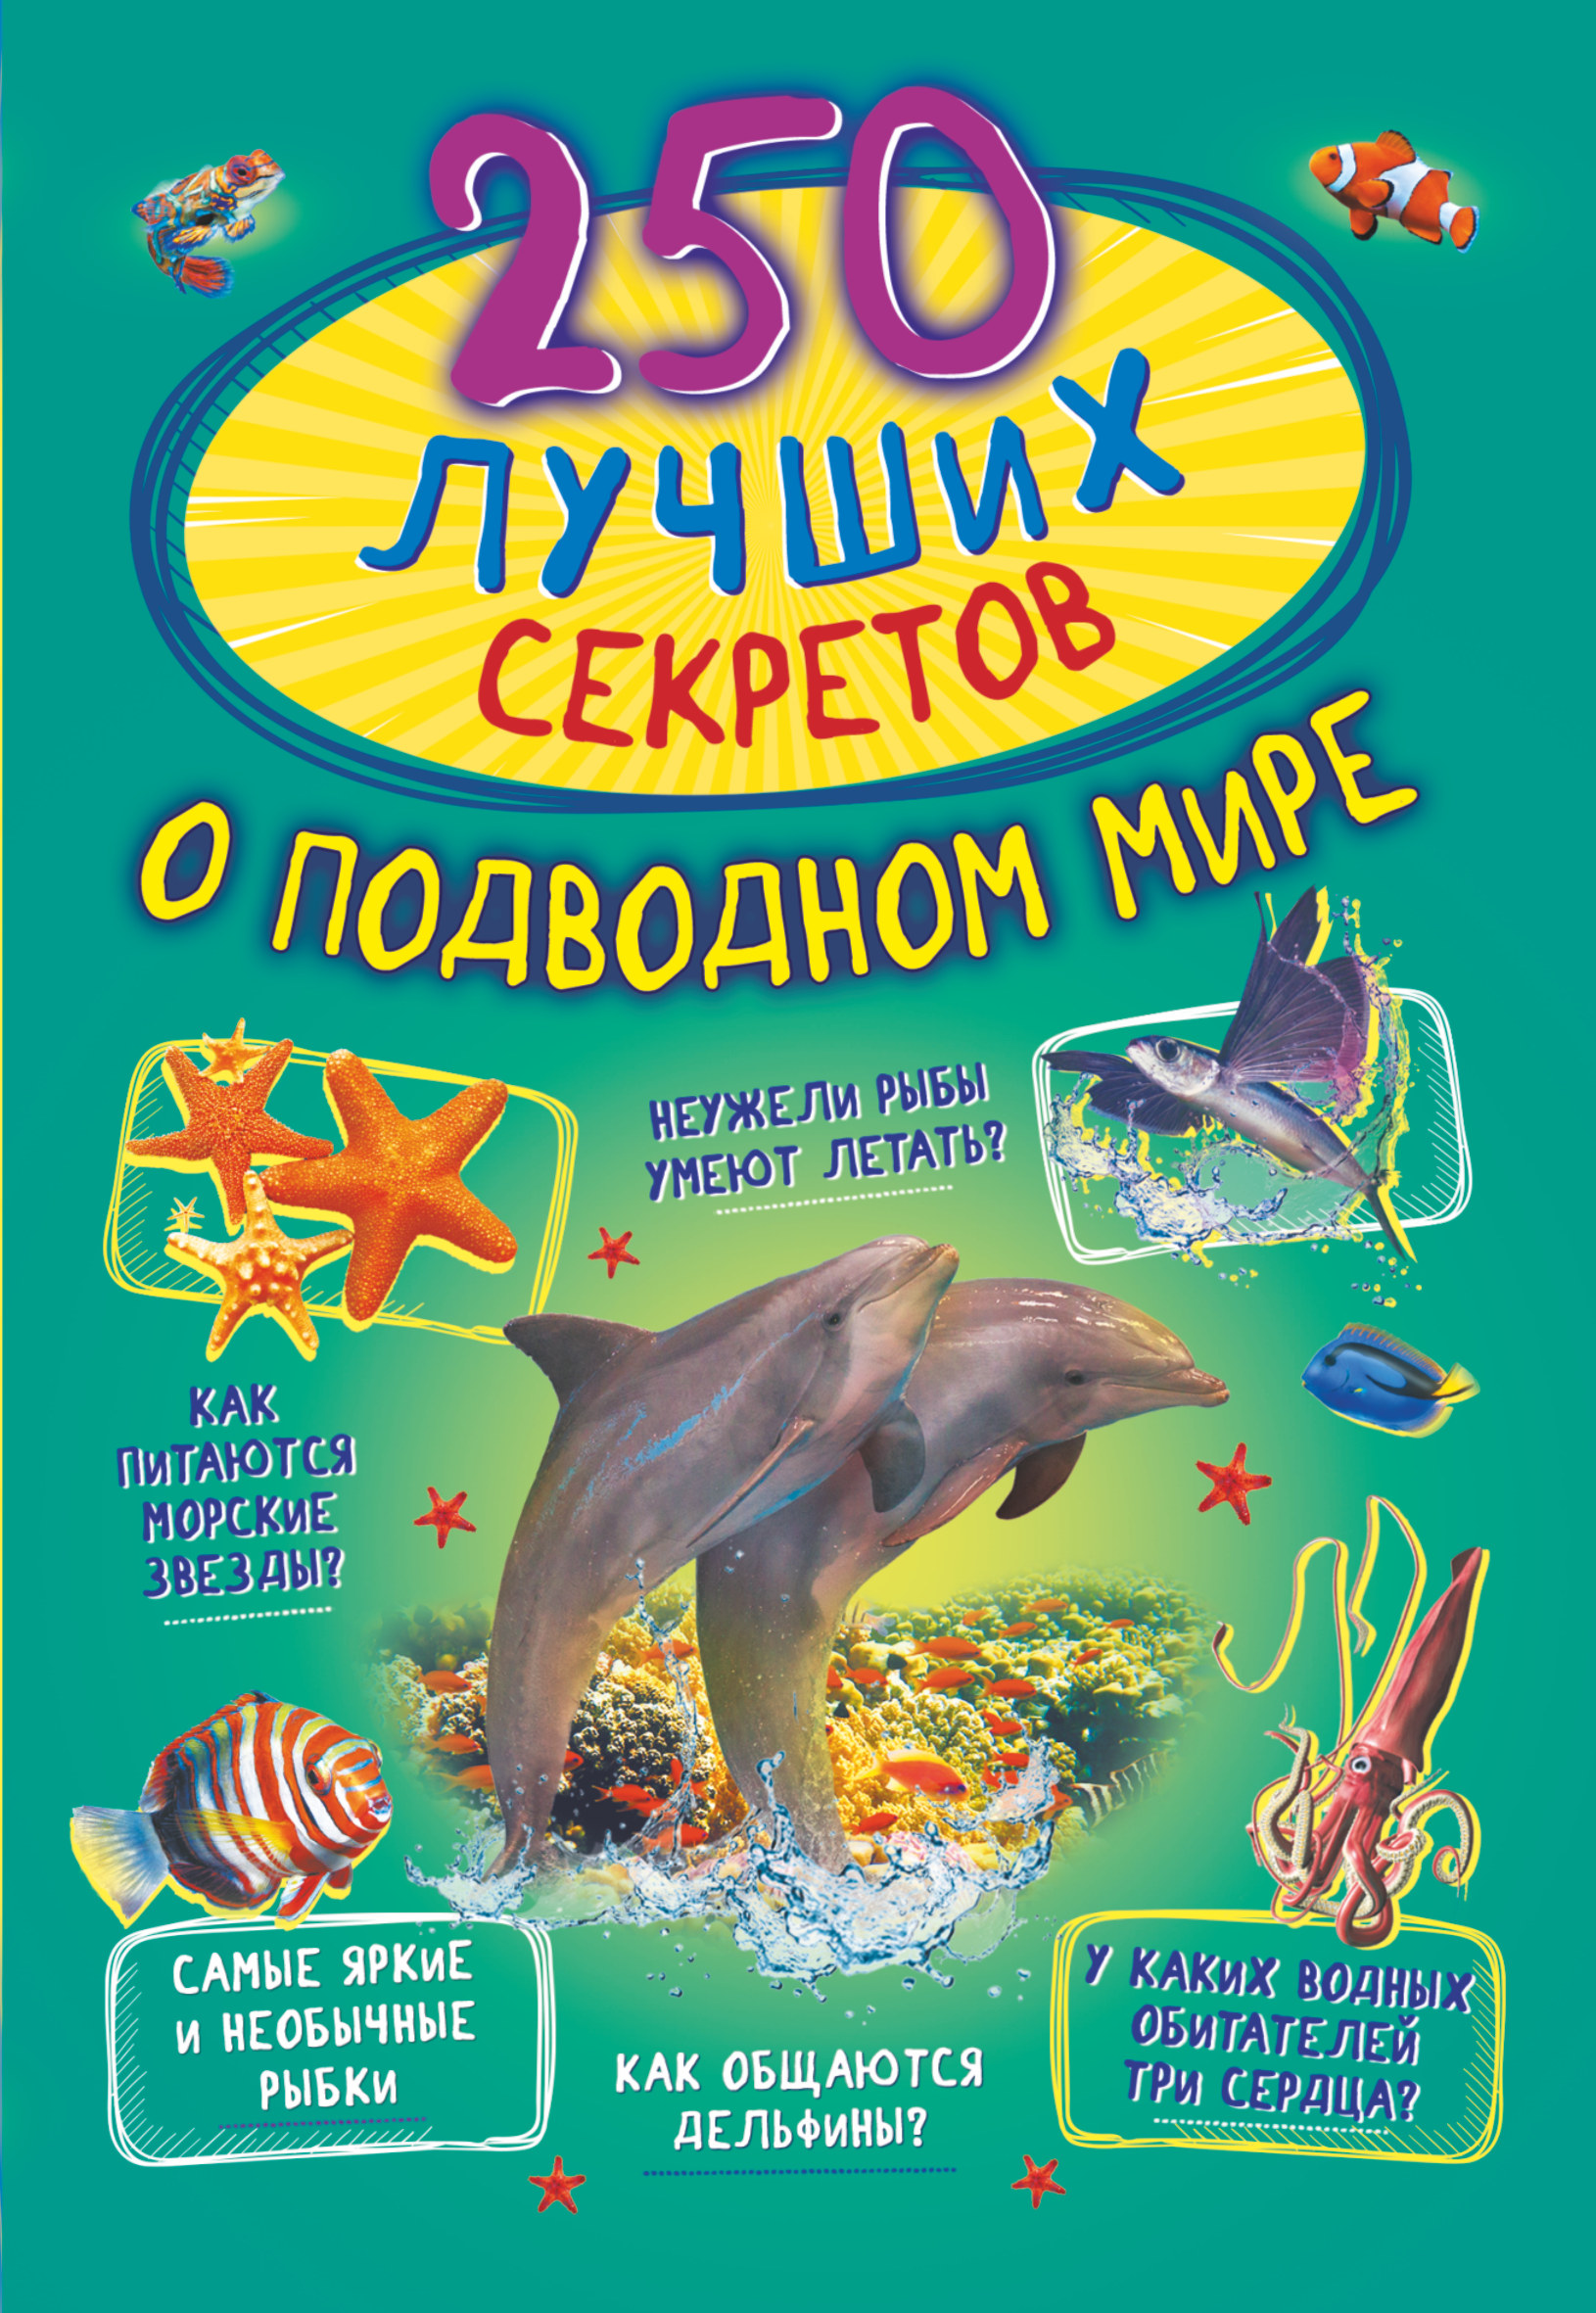 цена Прудник Анастасия Александровна 250 лучших секретов о подводном мире